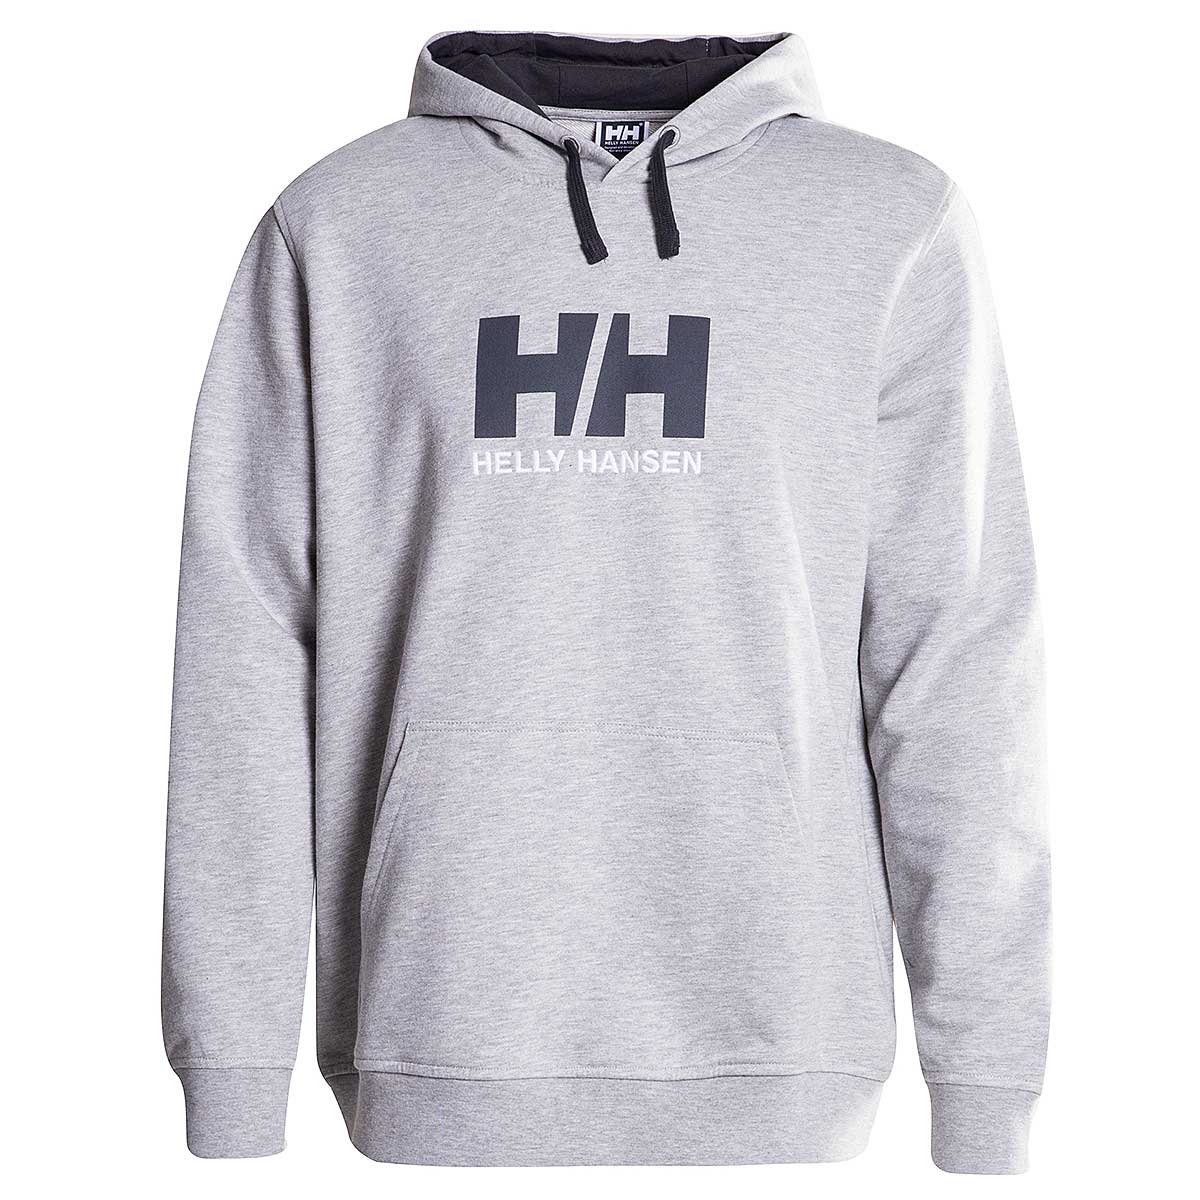 H H Logo - HELLY HANSEN HH LOGO HOODIE 949 GREY MELANGE bei KICKZ.com